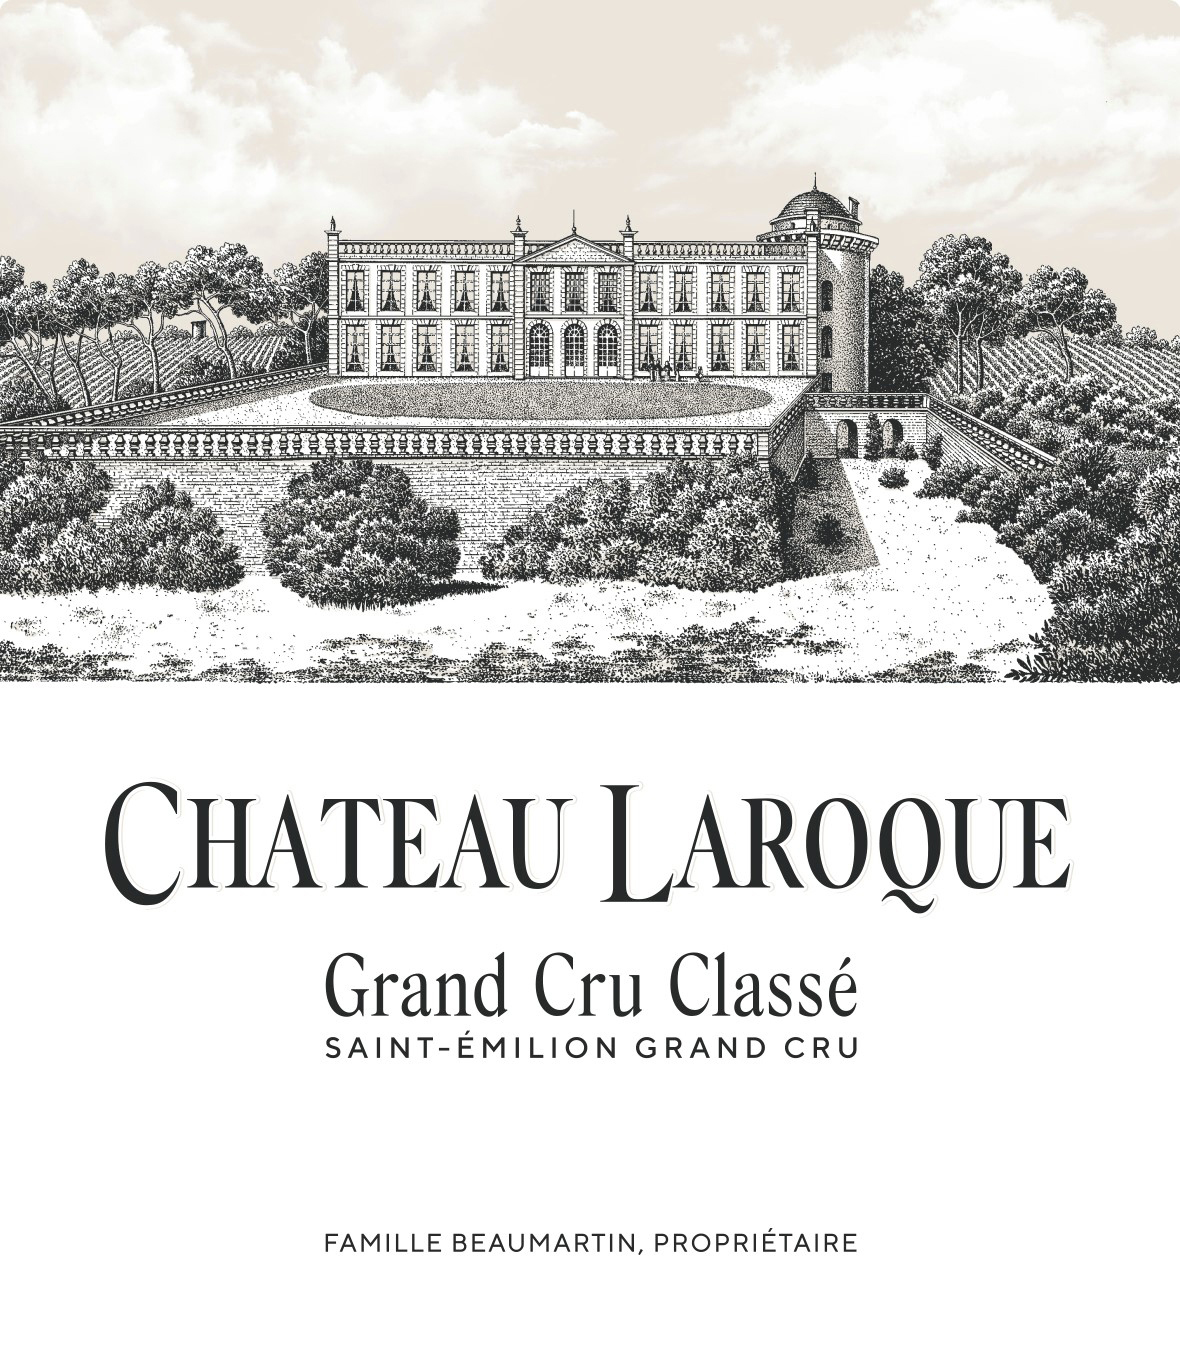 Chateau Laroque label